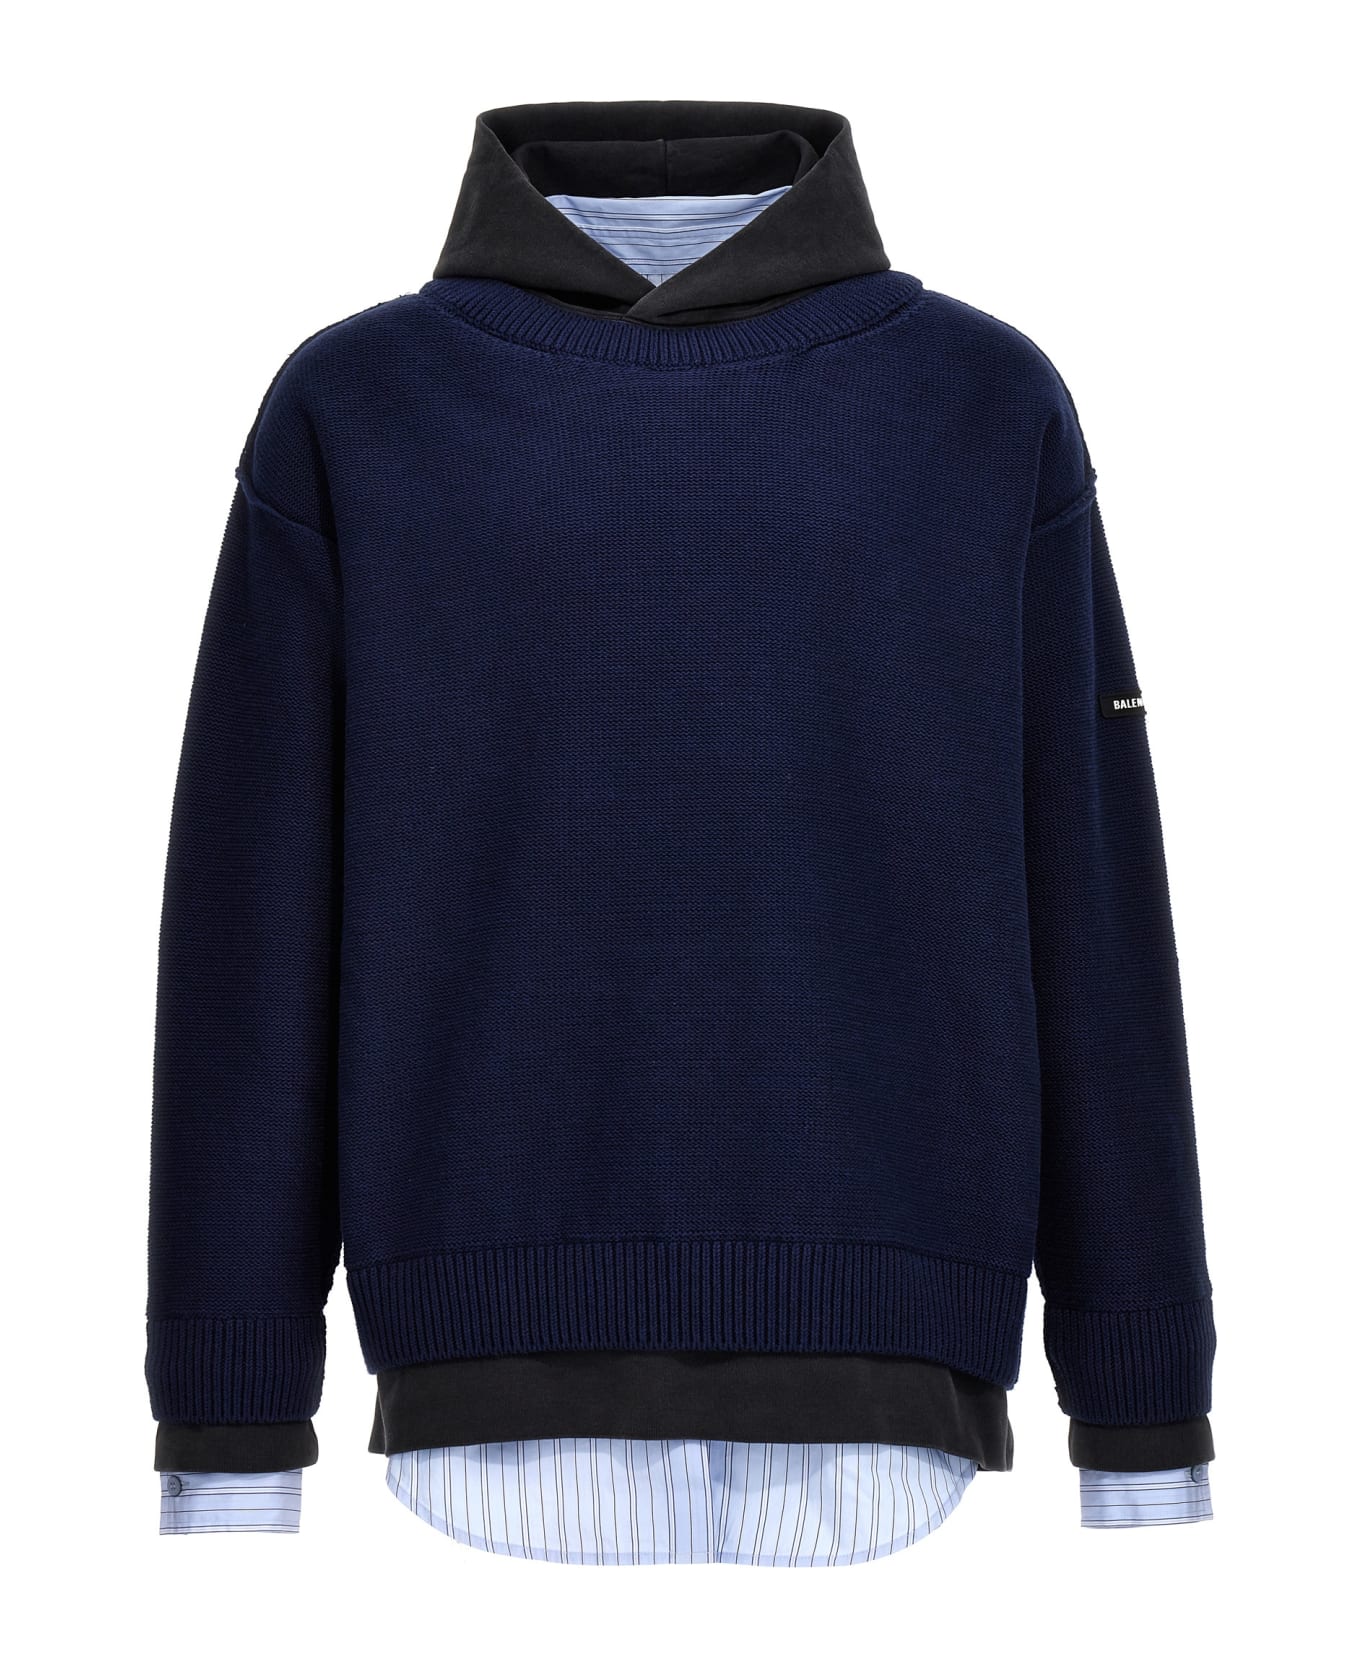 Balenciaga Layered Sweater - Blue